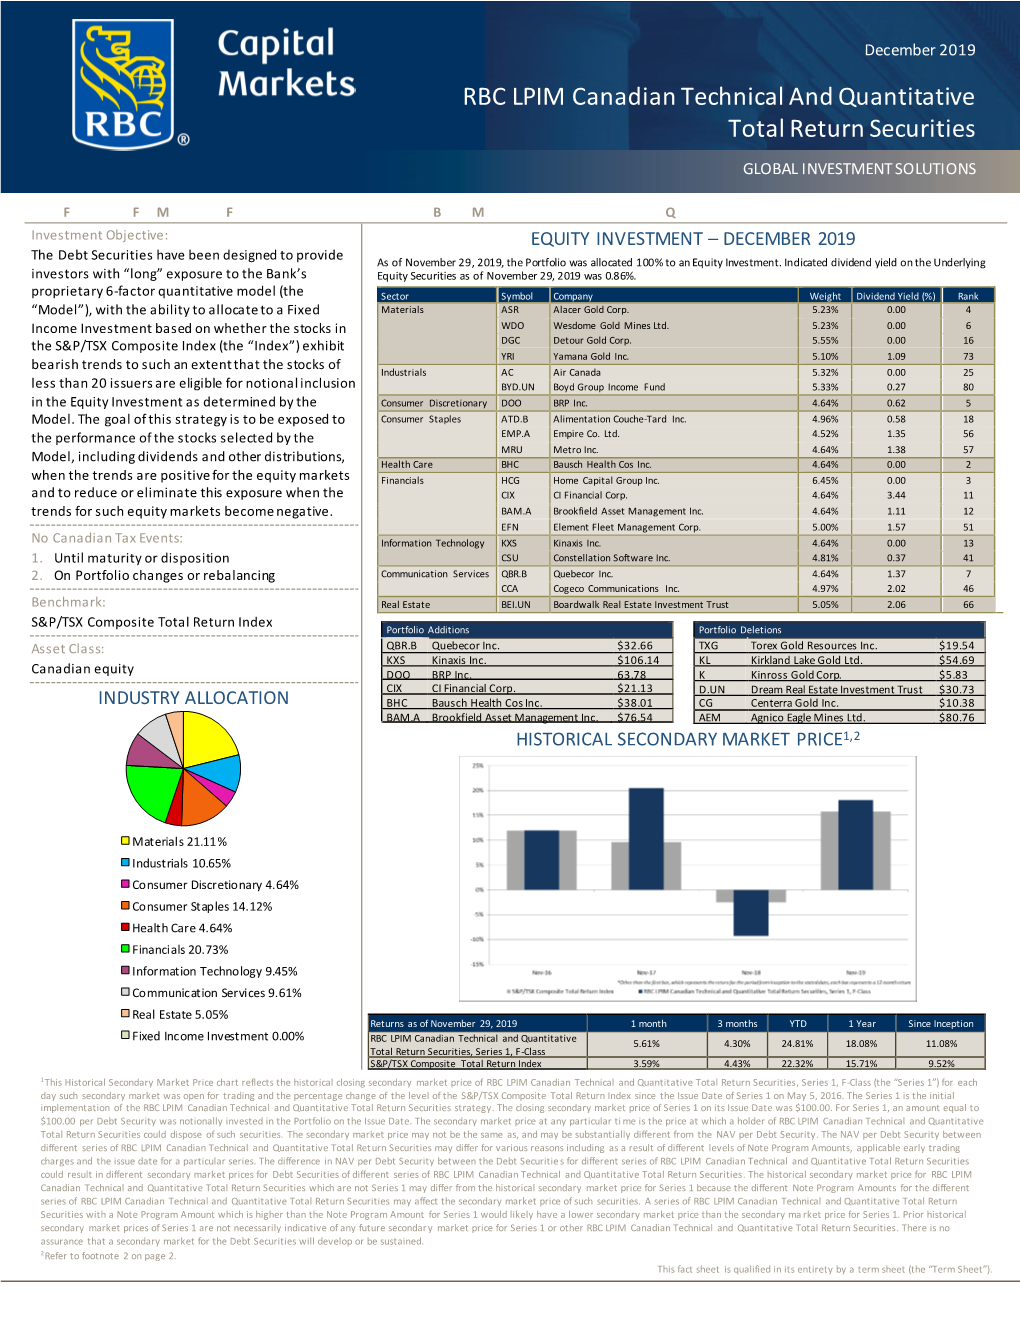 RBC LPIM Canadian Technical and Quantitative Total Return Securities